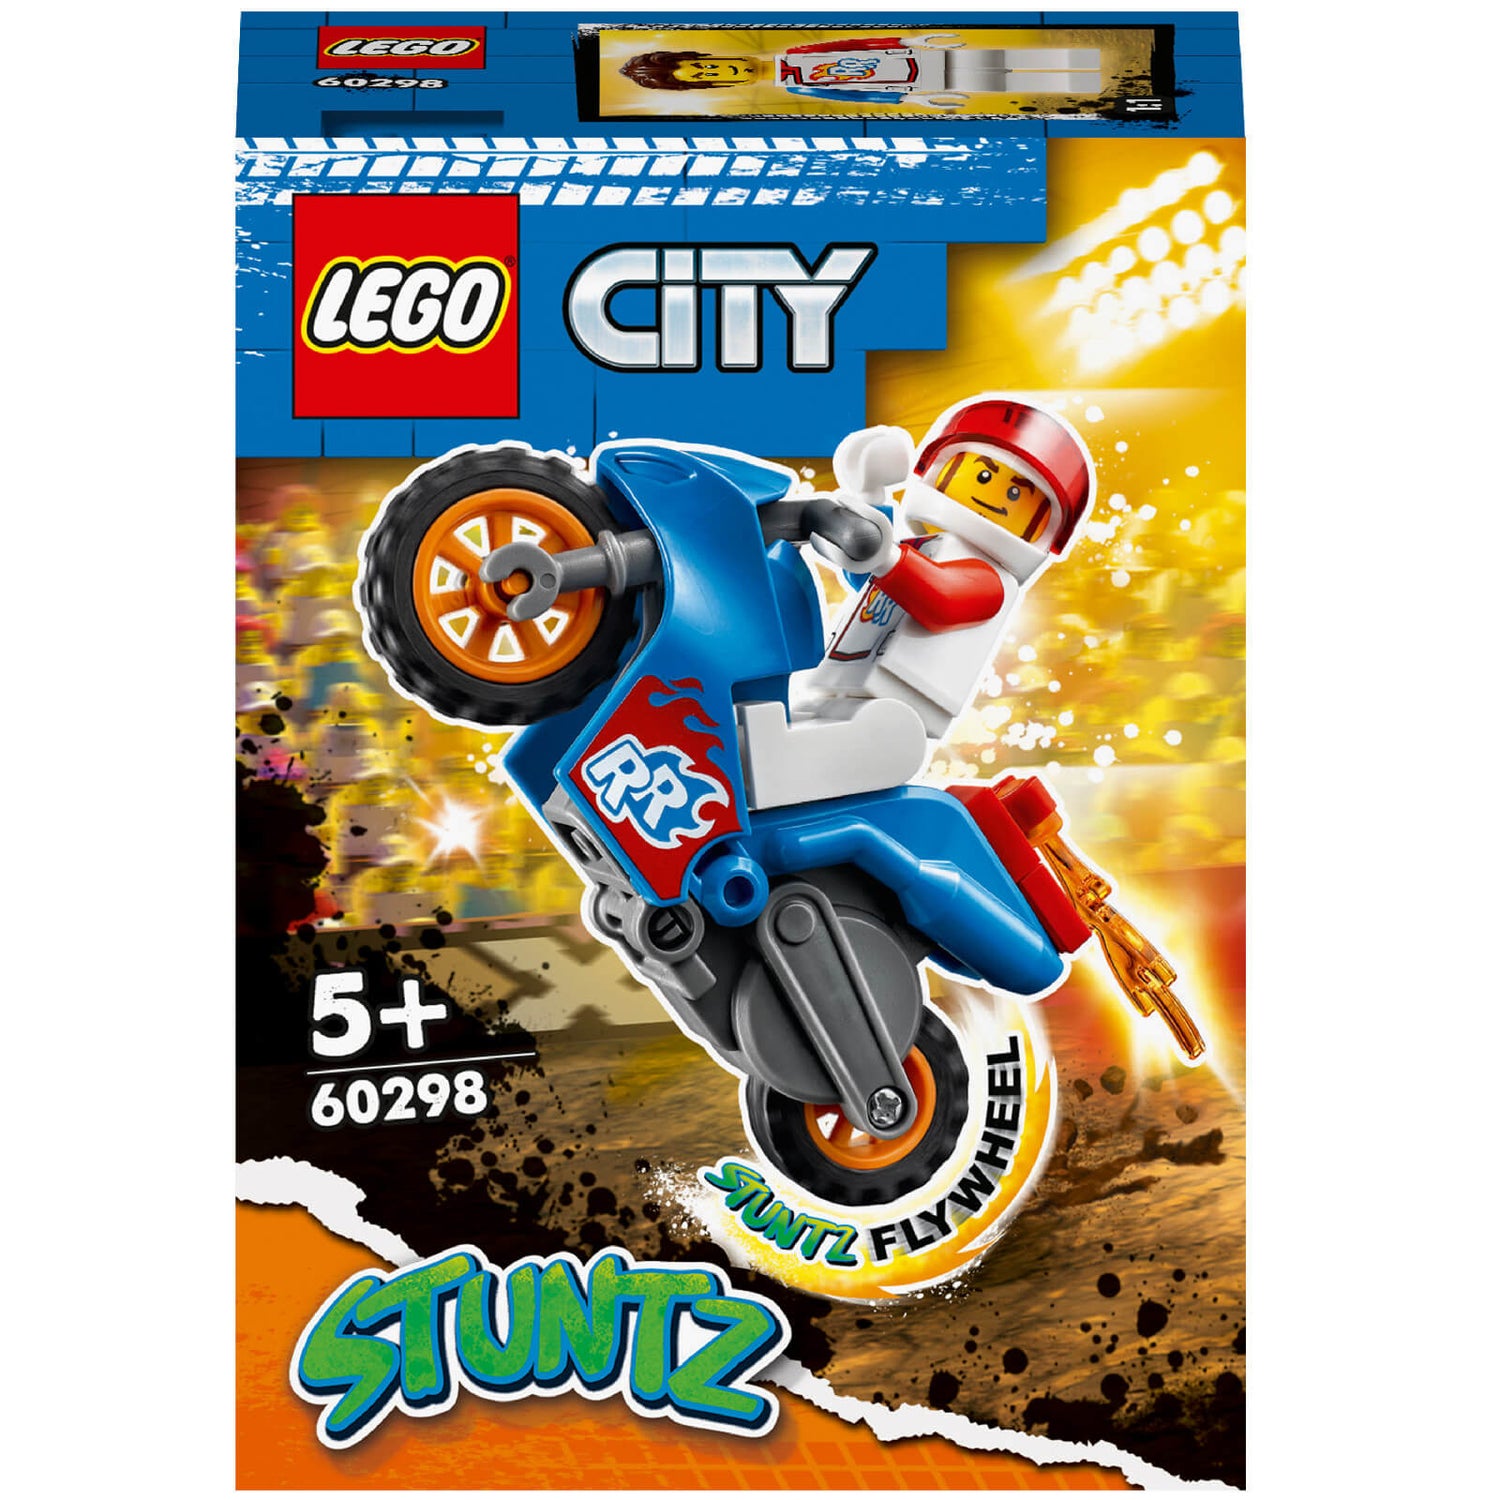 LEGO City: Stuntz Rocket Stunt Bike Set Toy Motorbike (60298)